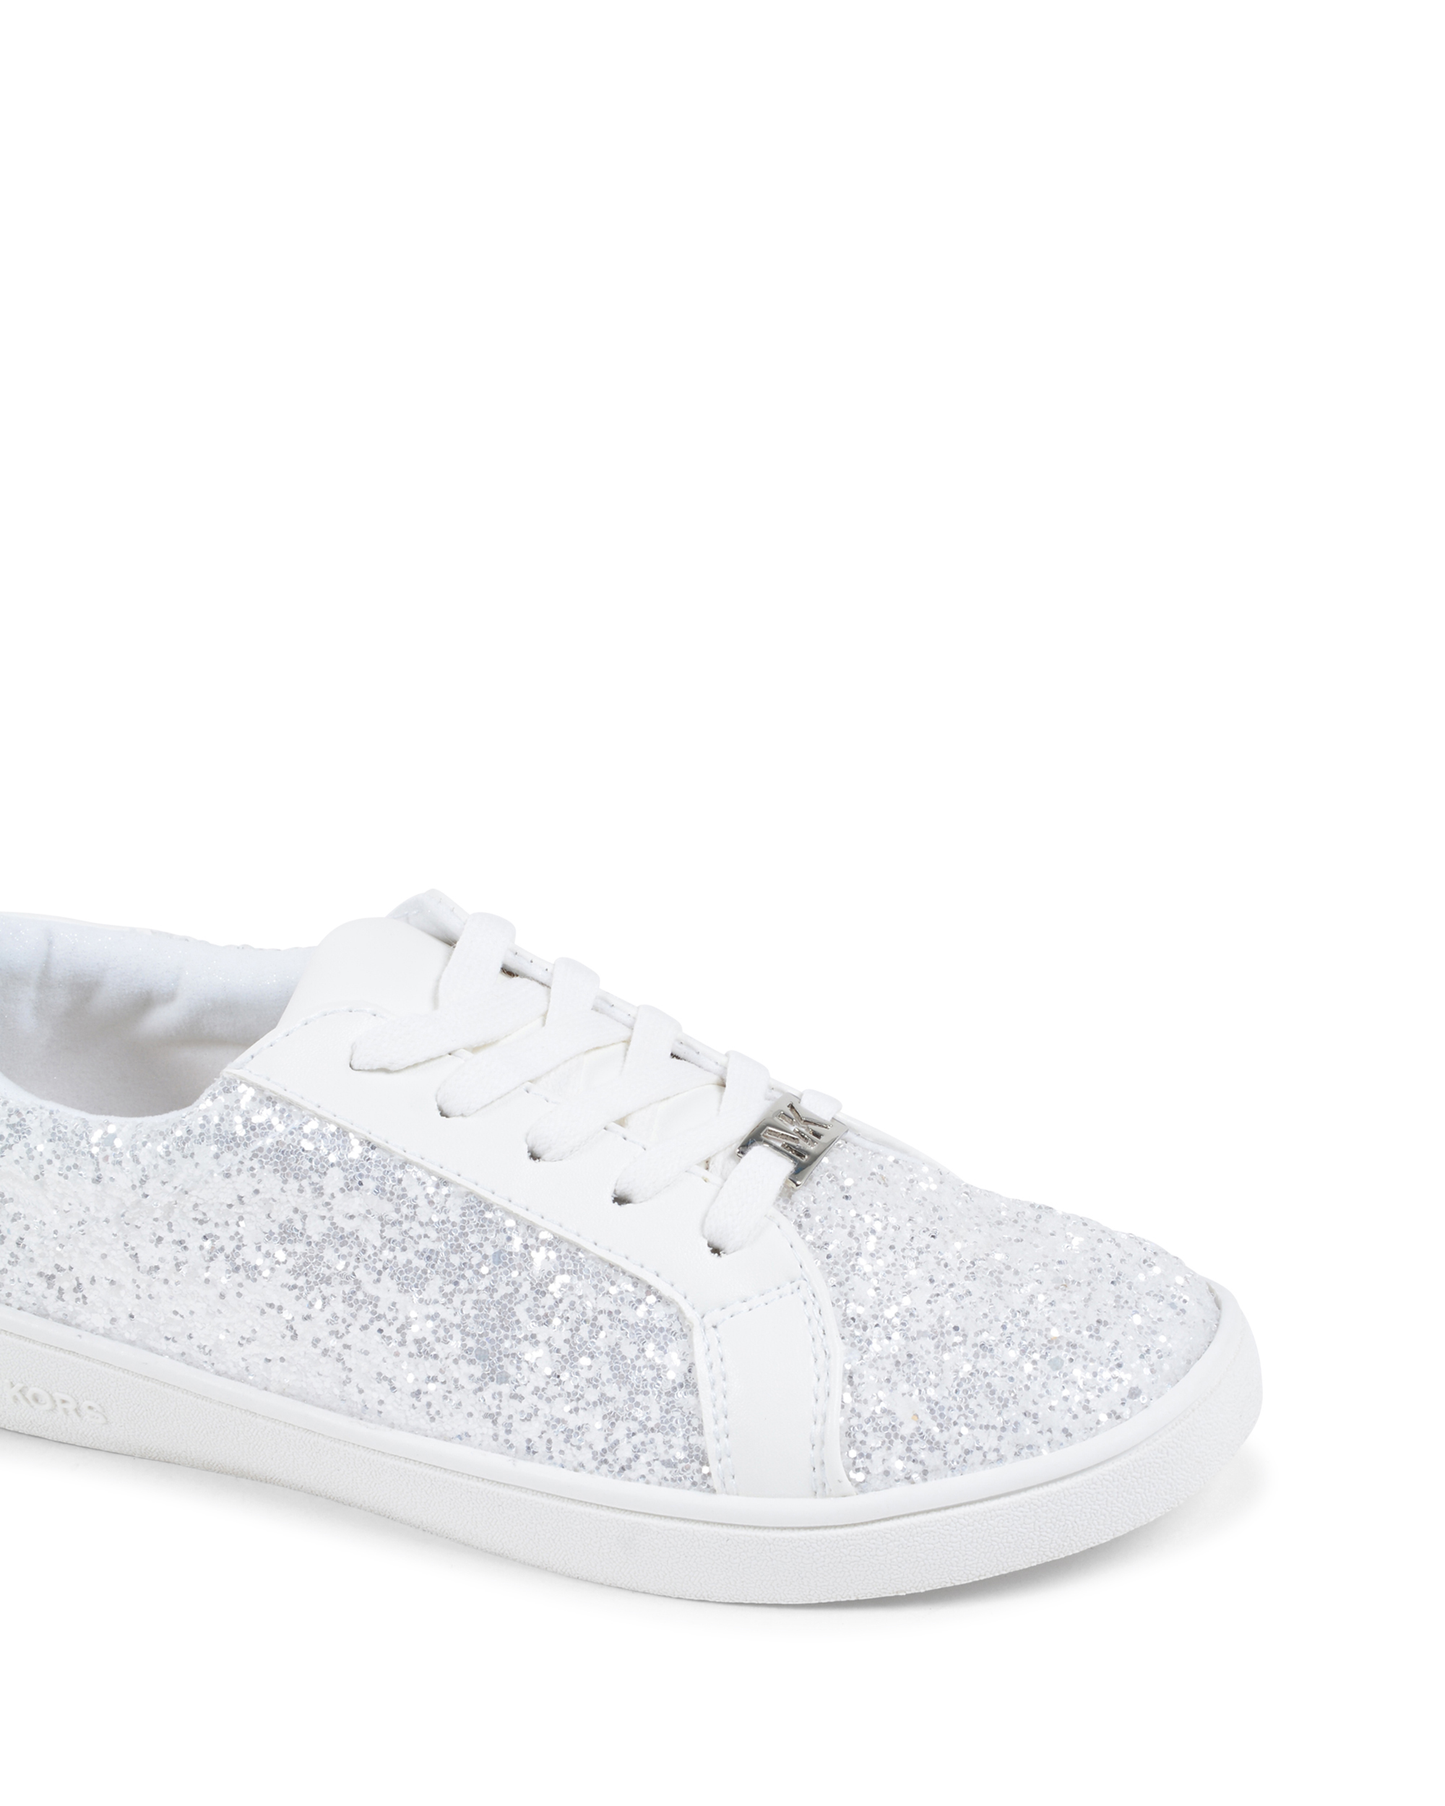 Michael Kors Girls Sneaker White ZIA IVY ACE WHITE GLITTER